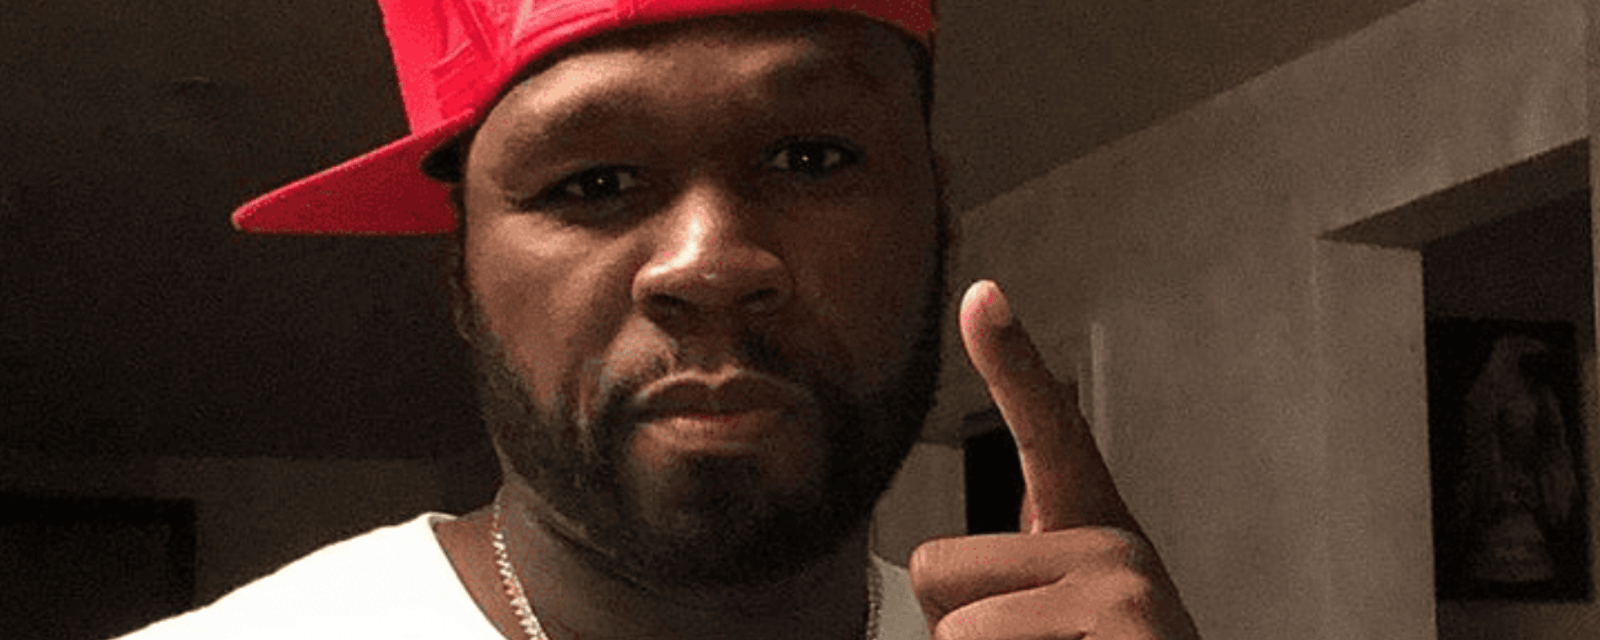 Le rappeur 50 Cent dans l'eau chaude alors qu'il a blessé une fan  